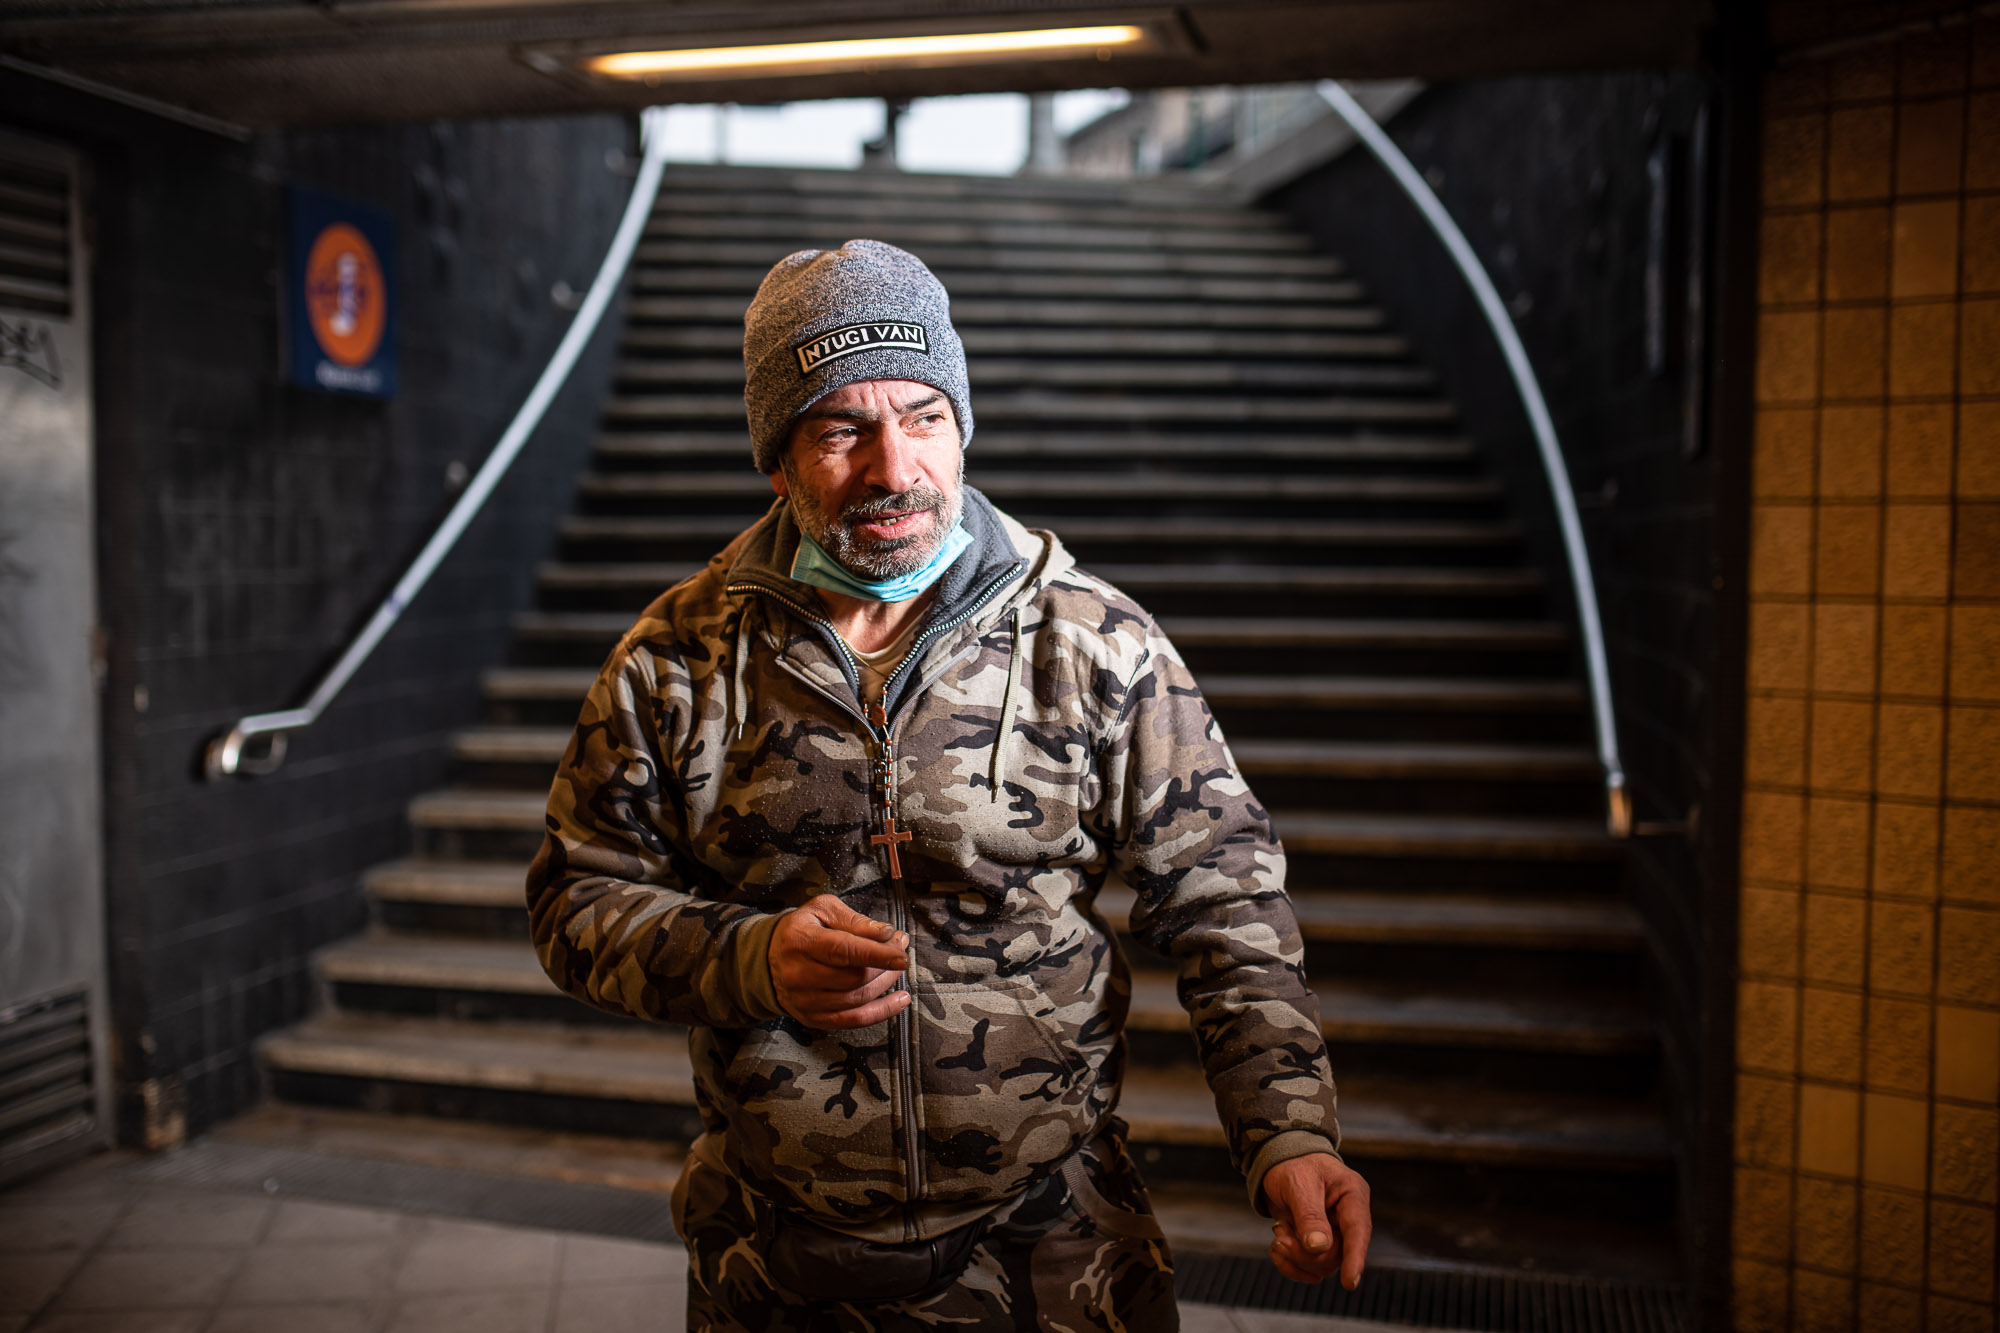 Hajléktalan ember portréja Budapesten